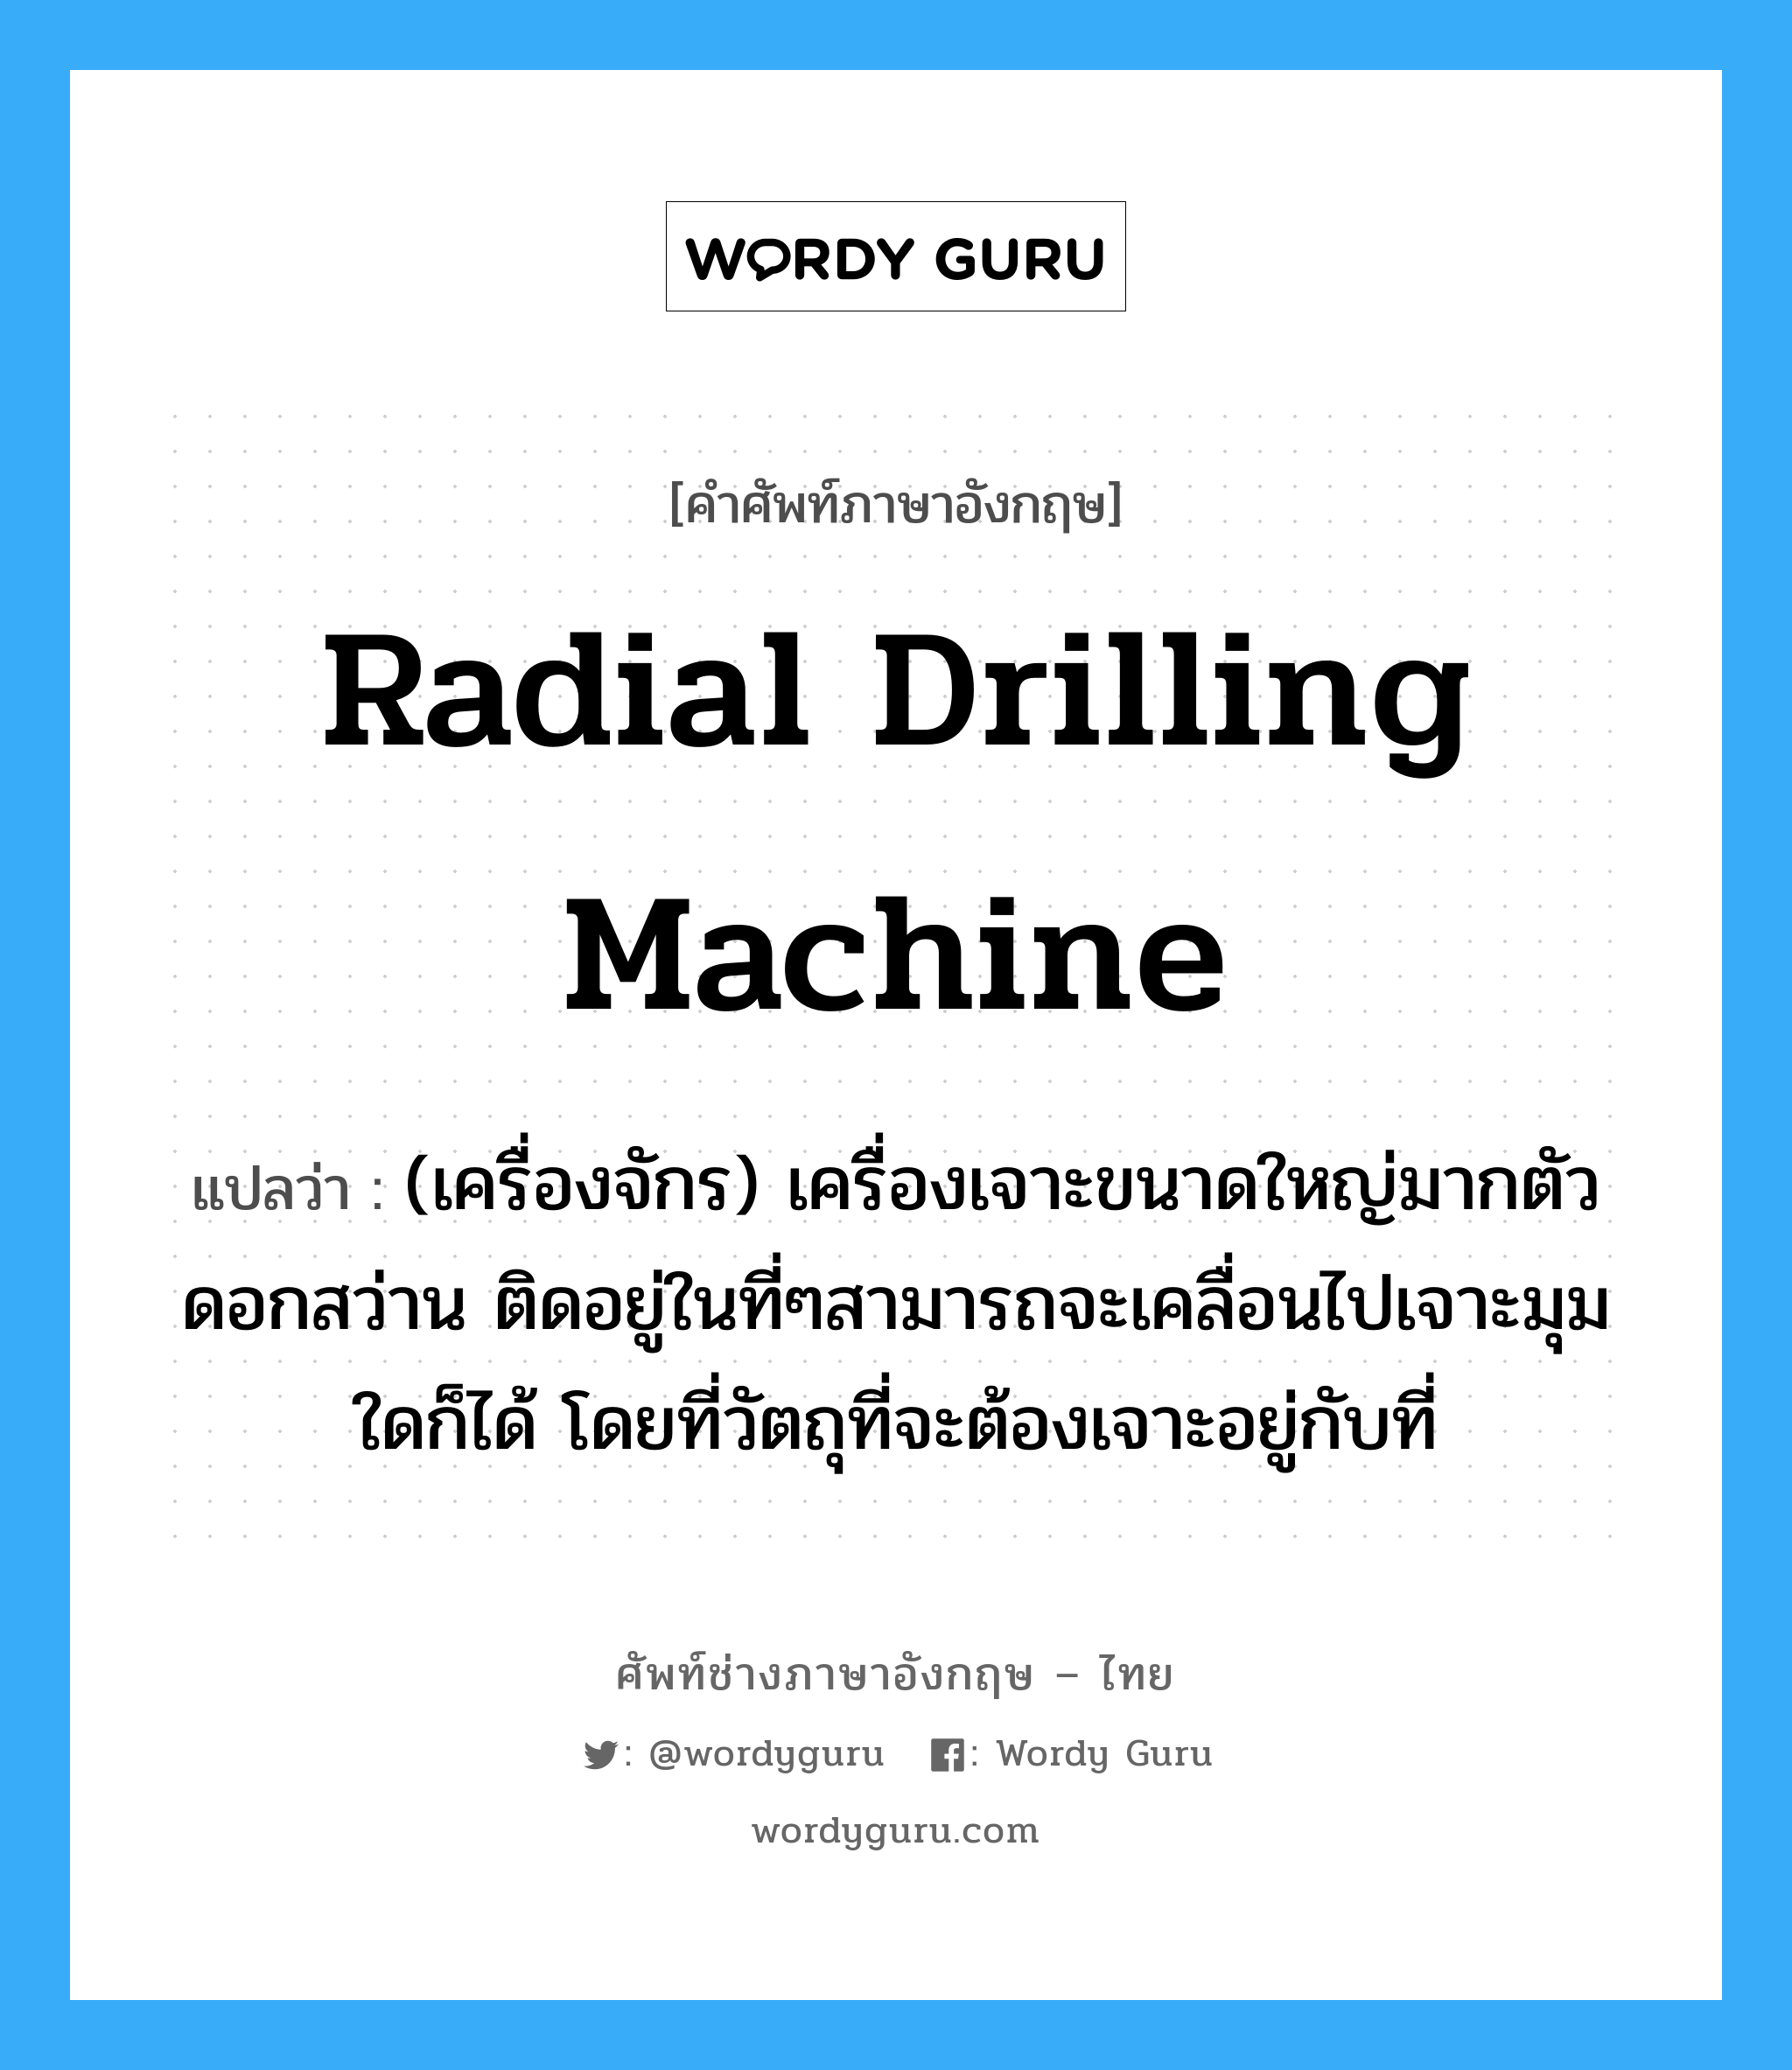 radial drilling machine แปลว่า?, คำศัพท์ช่างภาษาอังกฤษ - ไทย radial drilling machine คำศัพท์ภาษาอังกฤษ radial drilling machine แปลว่า (เครื่องจักร) เครื่องเจาะขนาดใหญ่มากตัวดอกสว่าน ติดอยู่ในที่ๆสามารถจะเคลื่อนไปเจาะมุมใดก็ได้ โดยที่วัตถุที่จะต้องเจาะอยู่กับที่